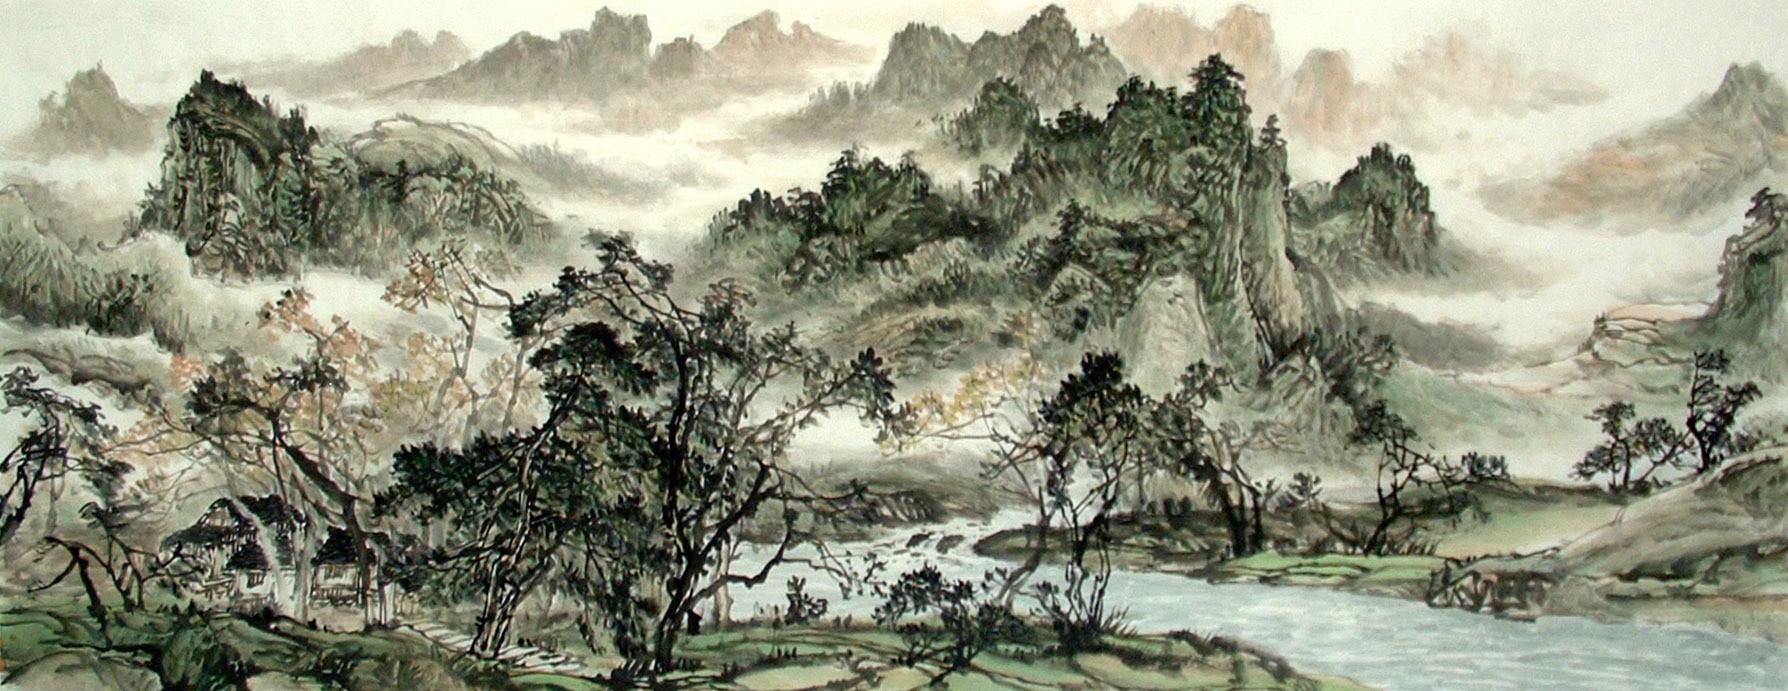 Chinese Landscape Painting - CNAG014620